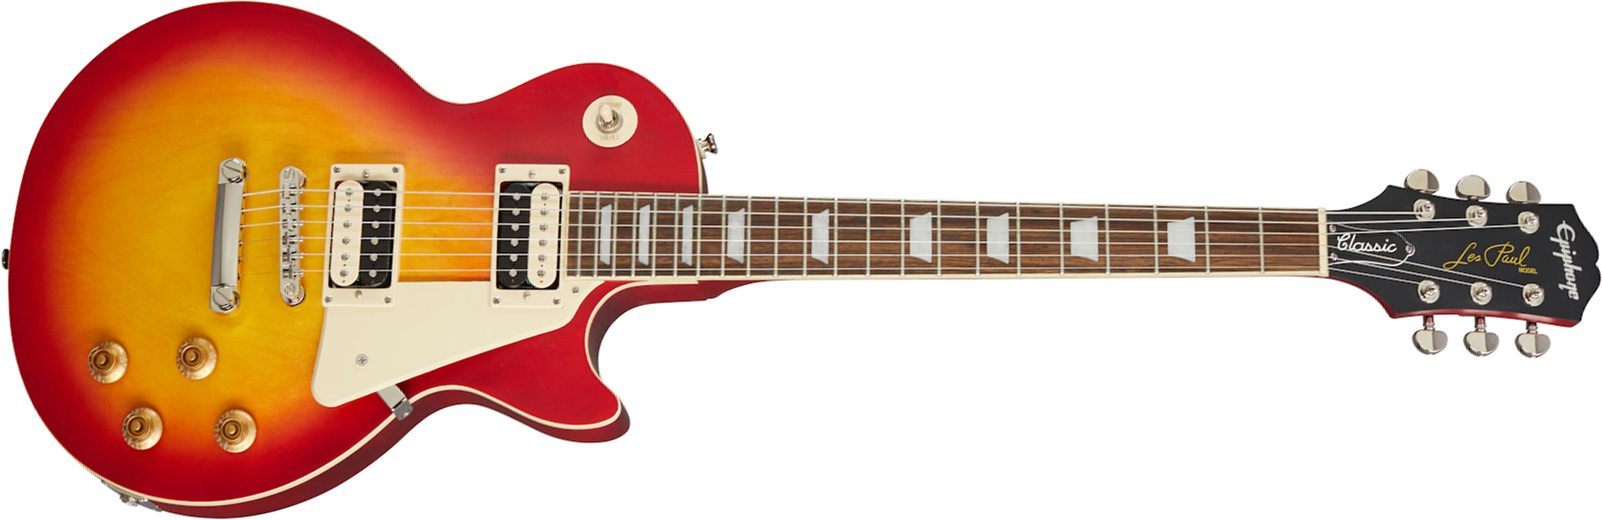 Epiphone Les Paul Classic Worn 2020 Hh Ht Rw - Worn Heritage Cherry Sunburst - Guitare Électrique Single Cut - Main picture